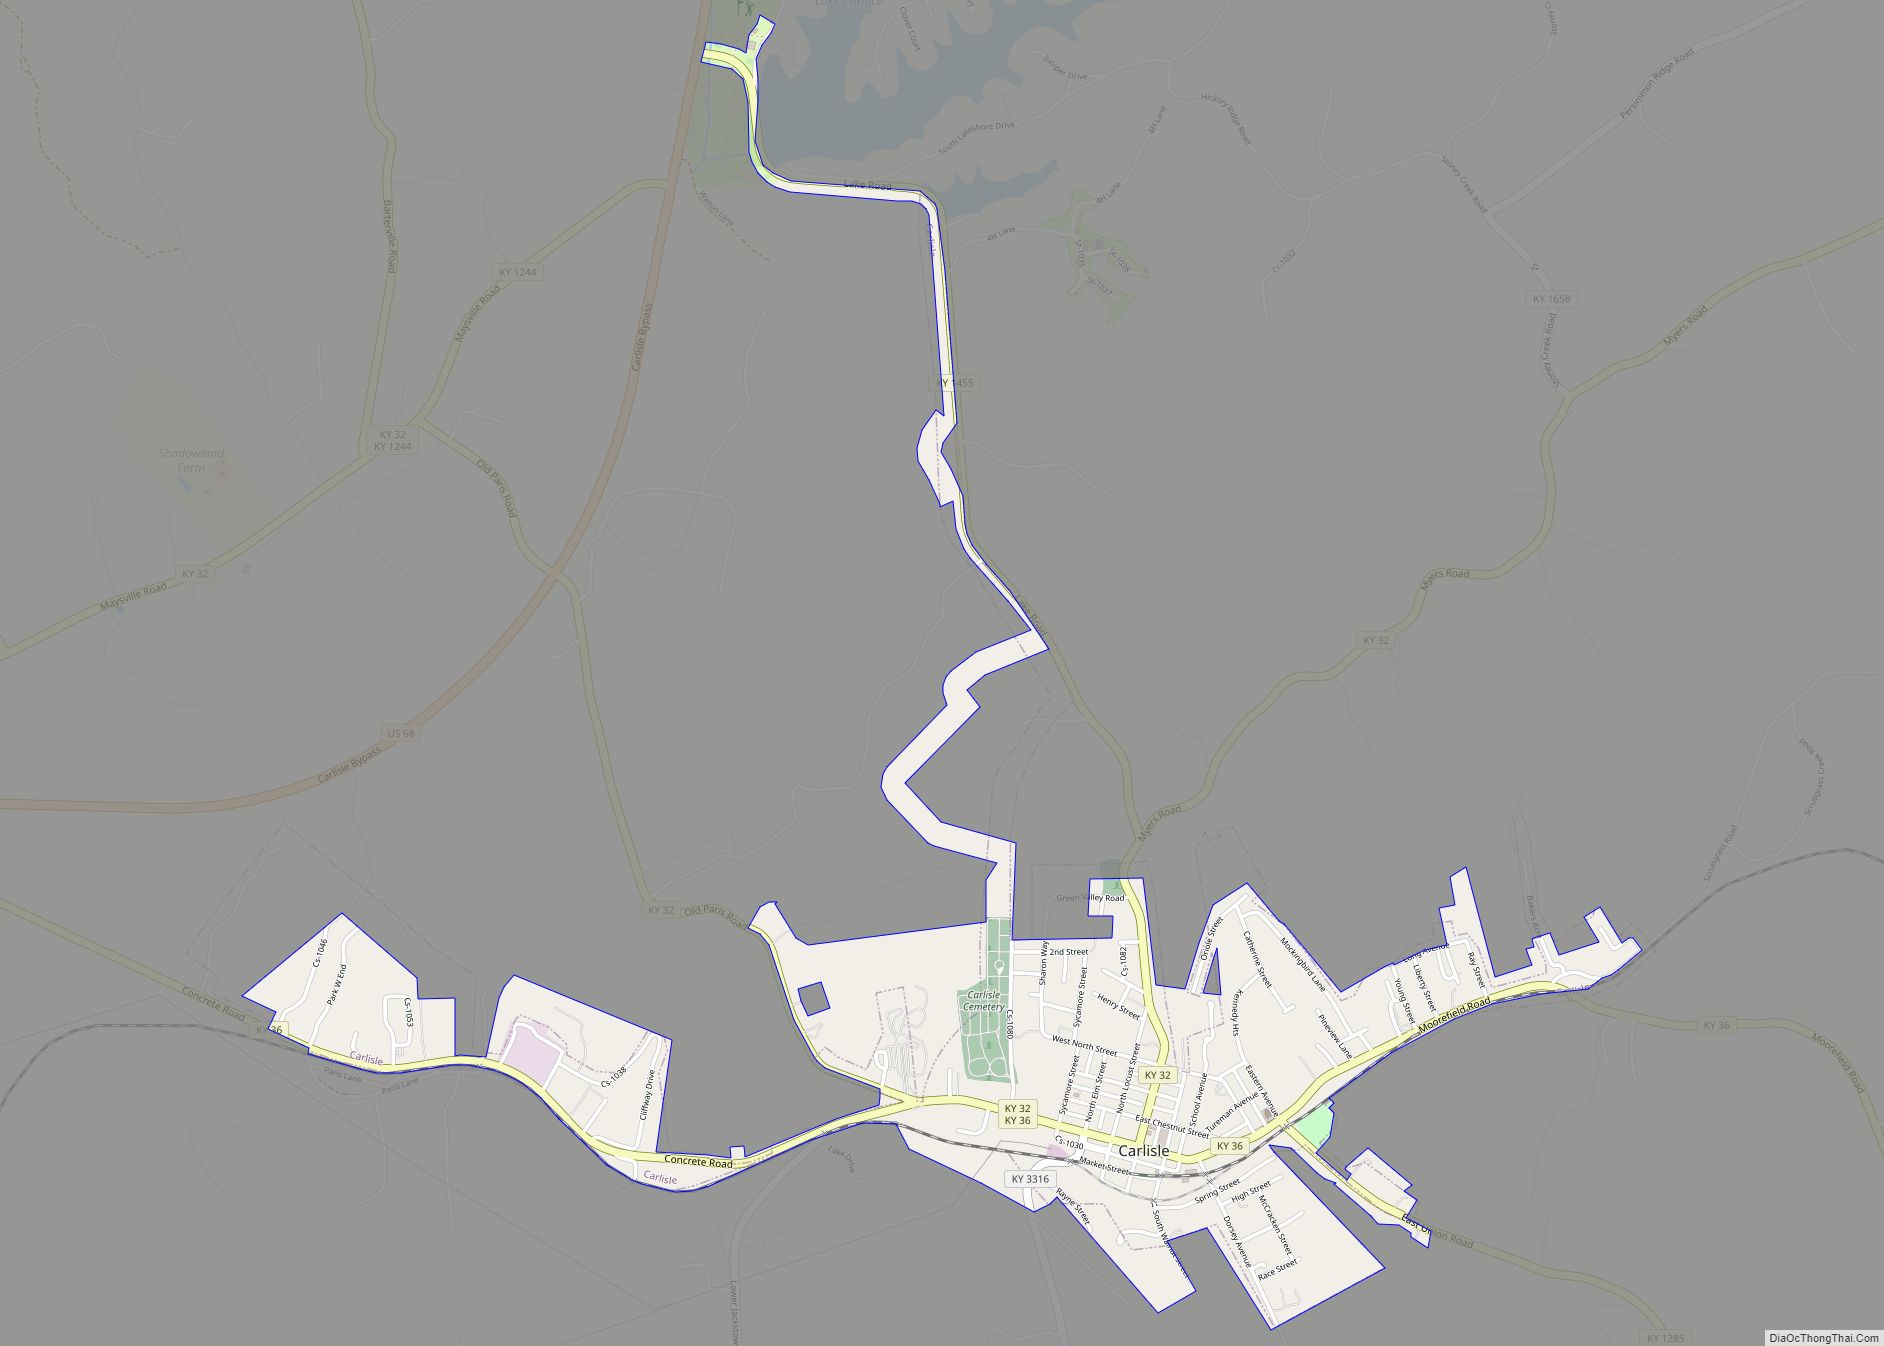 Map of Carlisle city, Kentucky